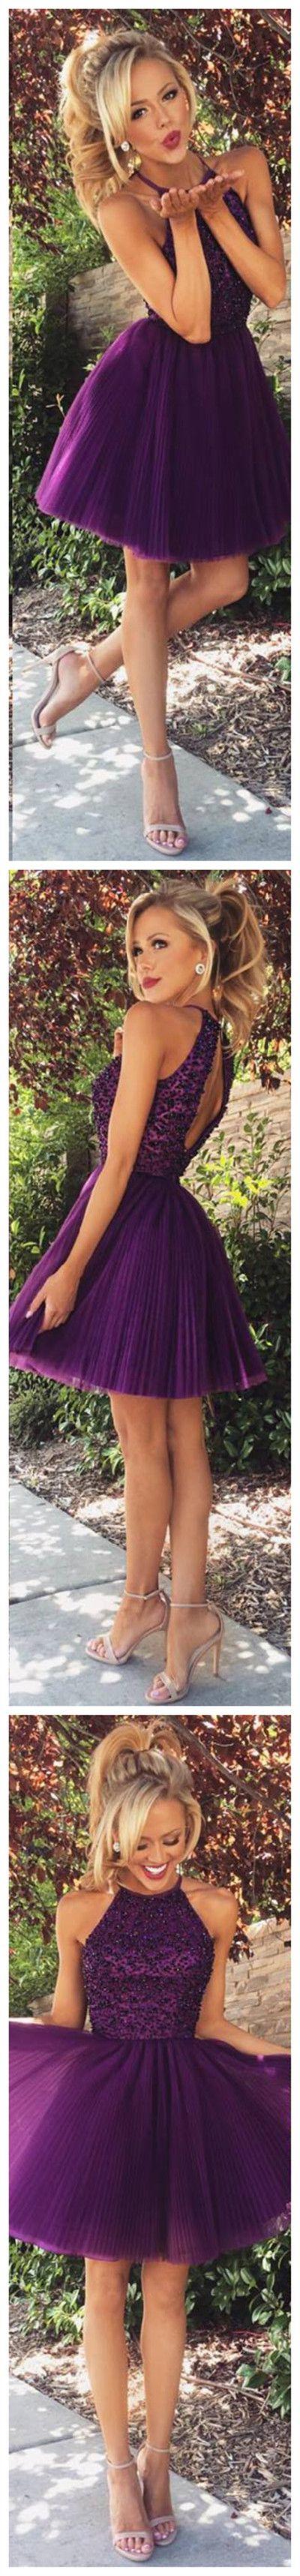 زفاف - A-line High Neck Black Beaded Bodice Grape Tulle Short Prom Homecoming Dresses APD1557 From DiyDressonline